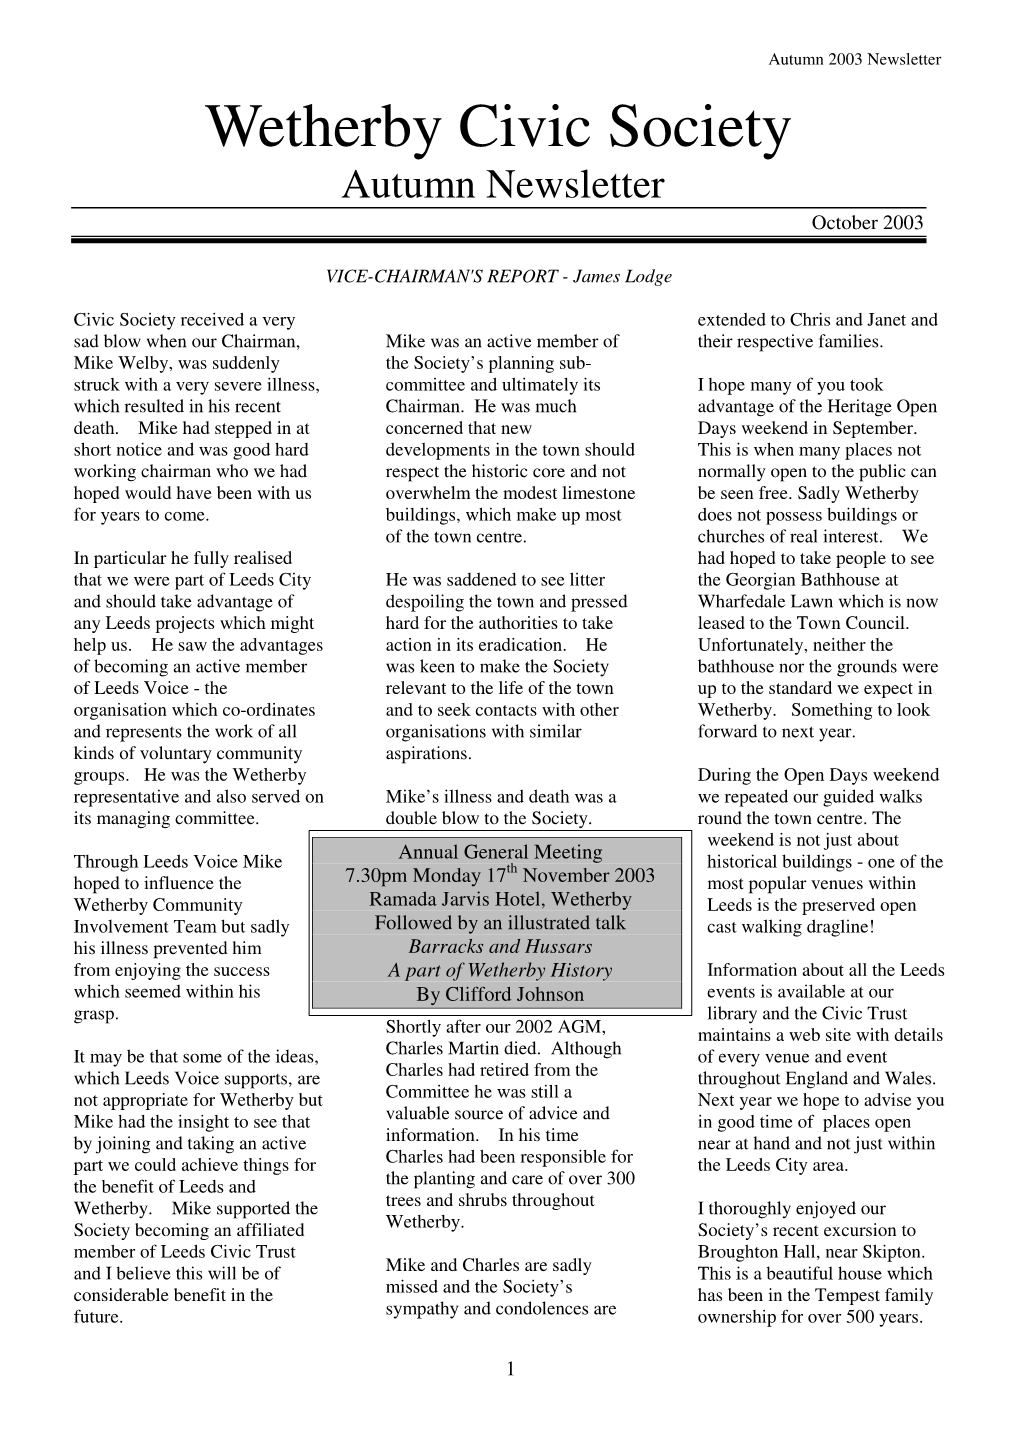 2003 October Newsletter